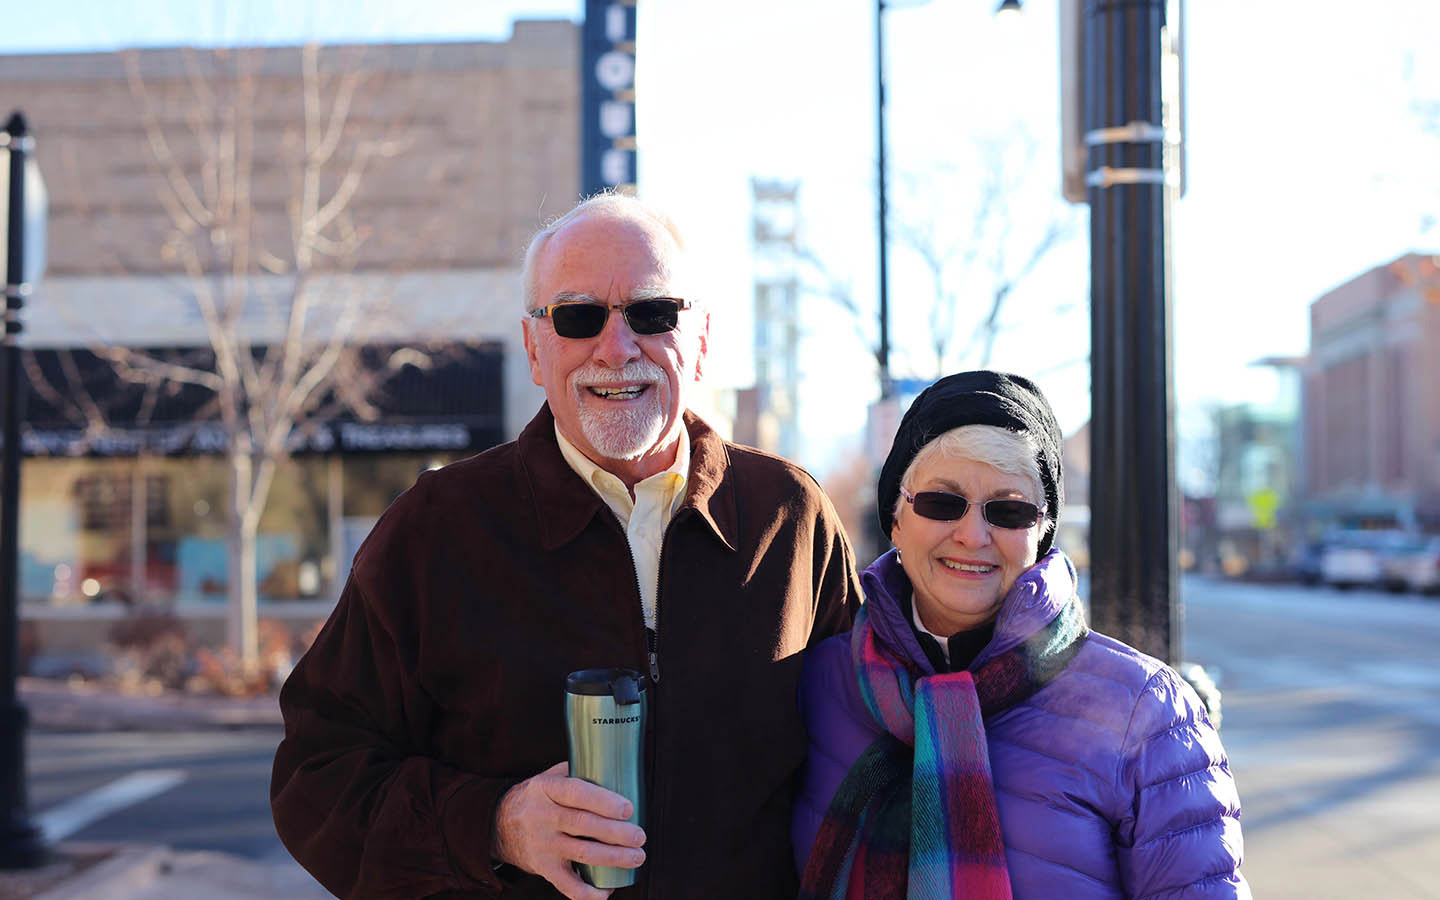 A Cochlear implantátumot viselő Tom, aki feleségével, Brendával fényképhez áll be az utcán